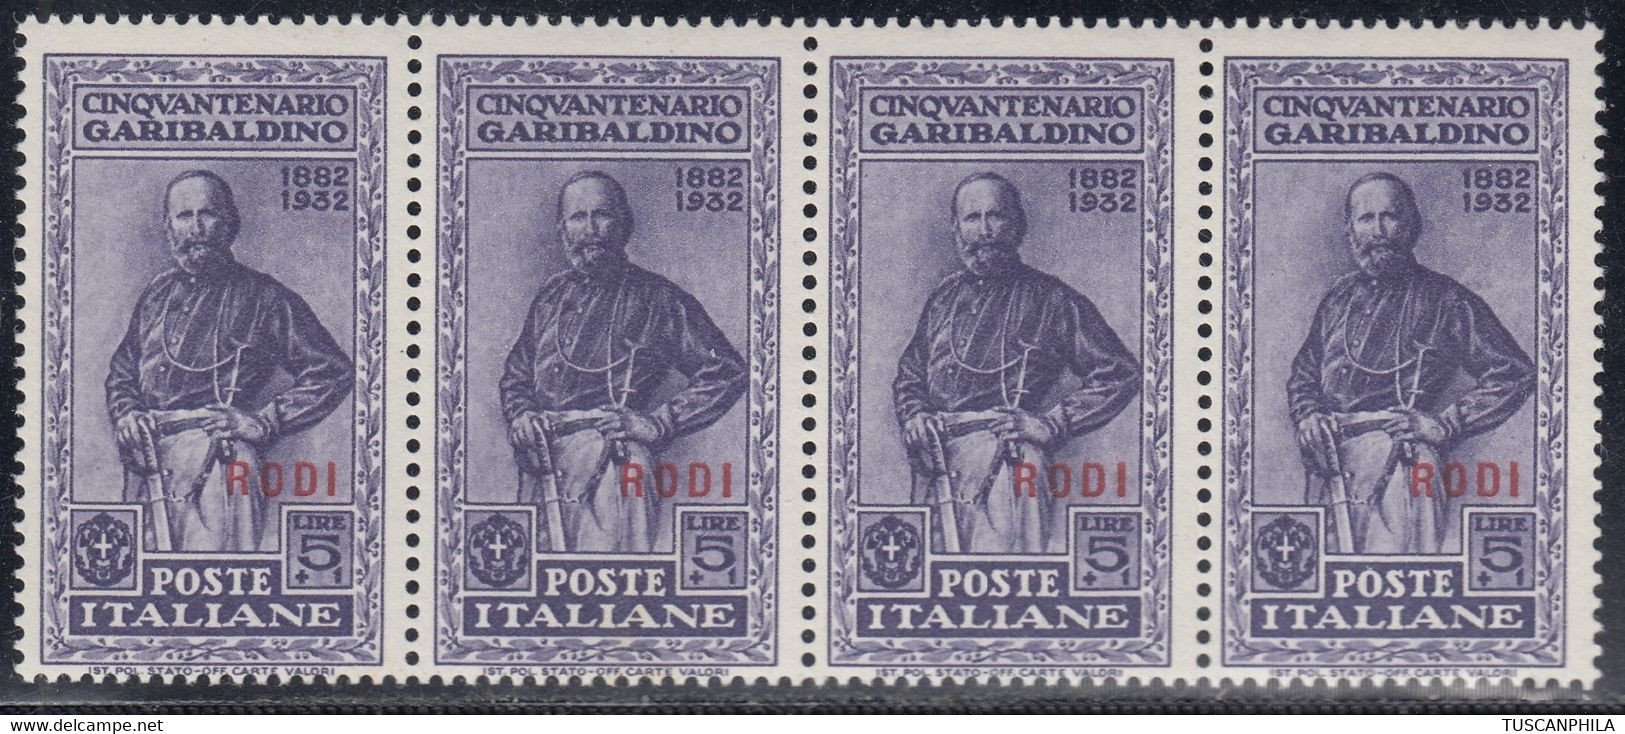 1932 Giuseppe Garibaldi 4 Val. Sass. 29 MNH** Cv 280 - Aegean (Rodi)